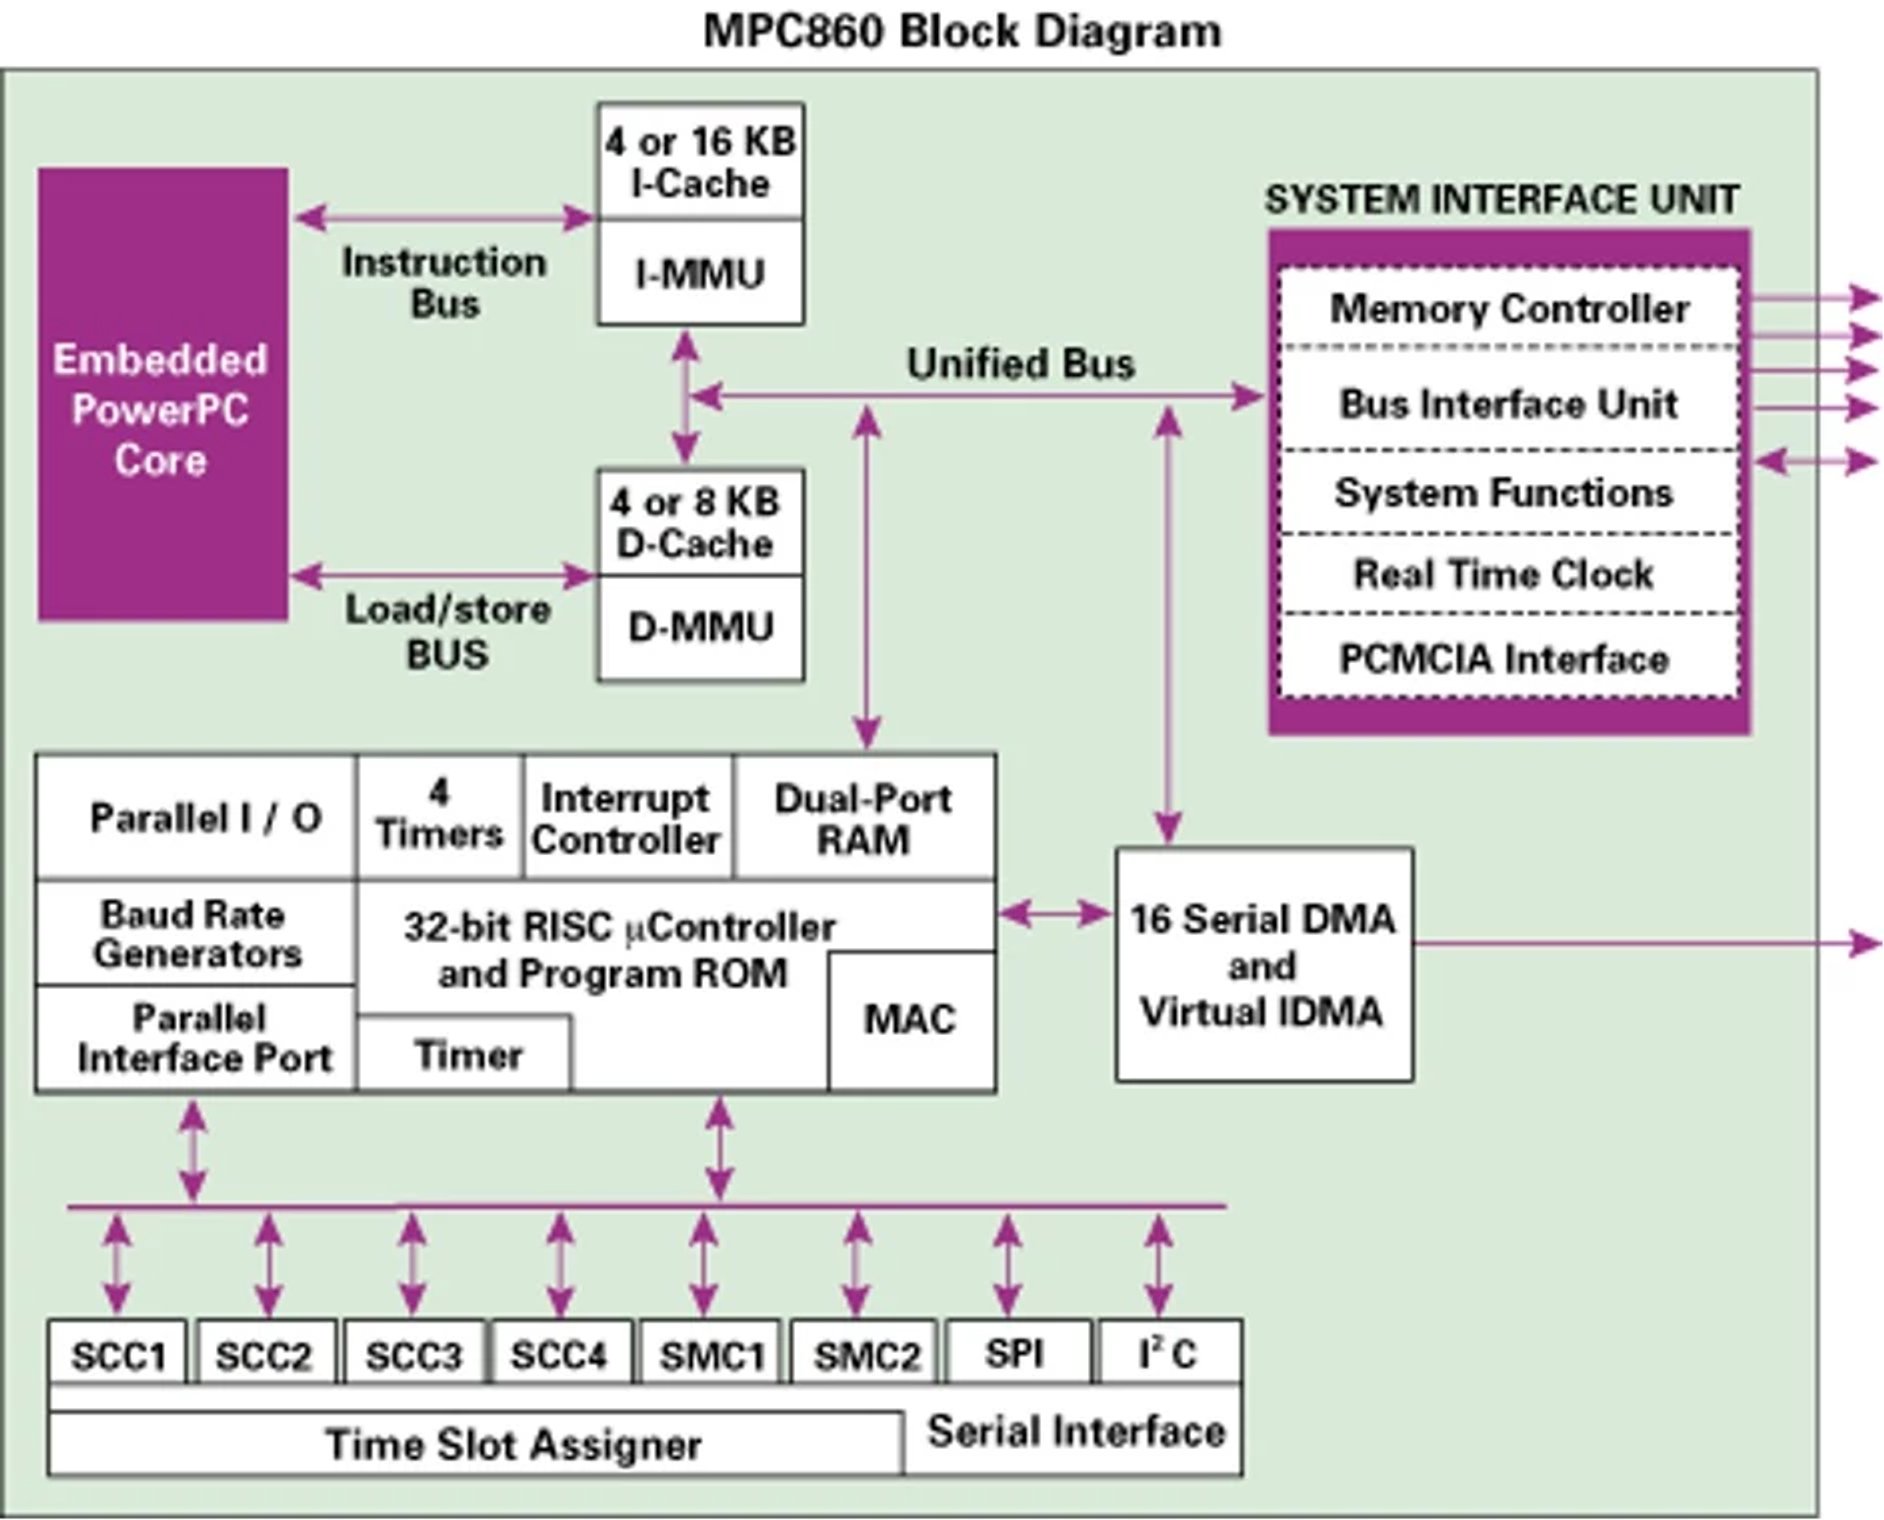 NXP MPC860 block diagram